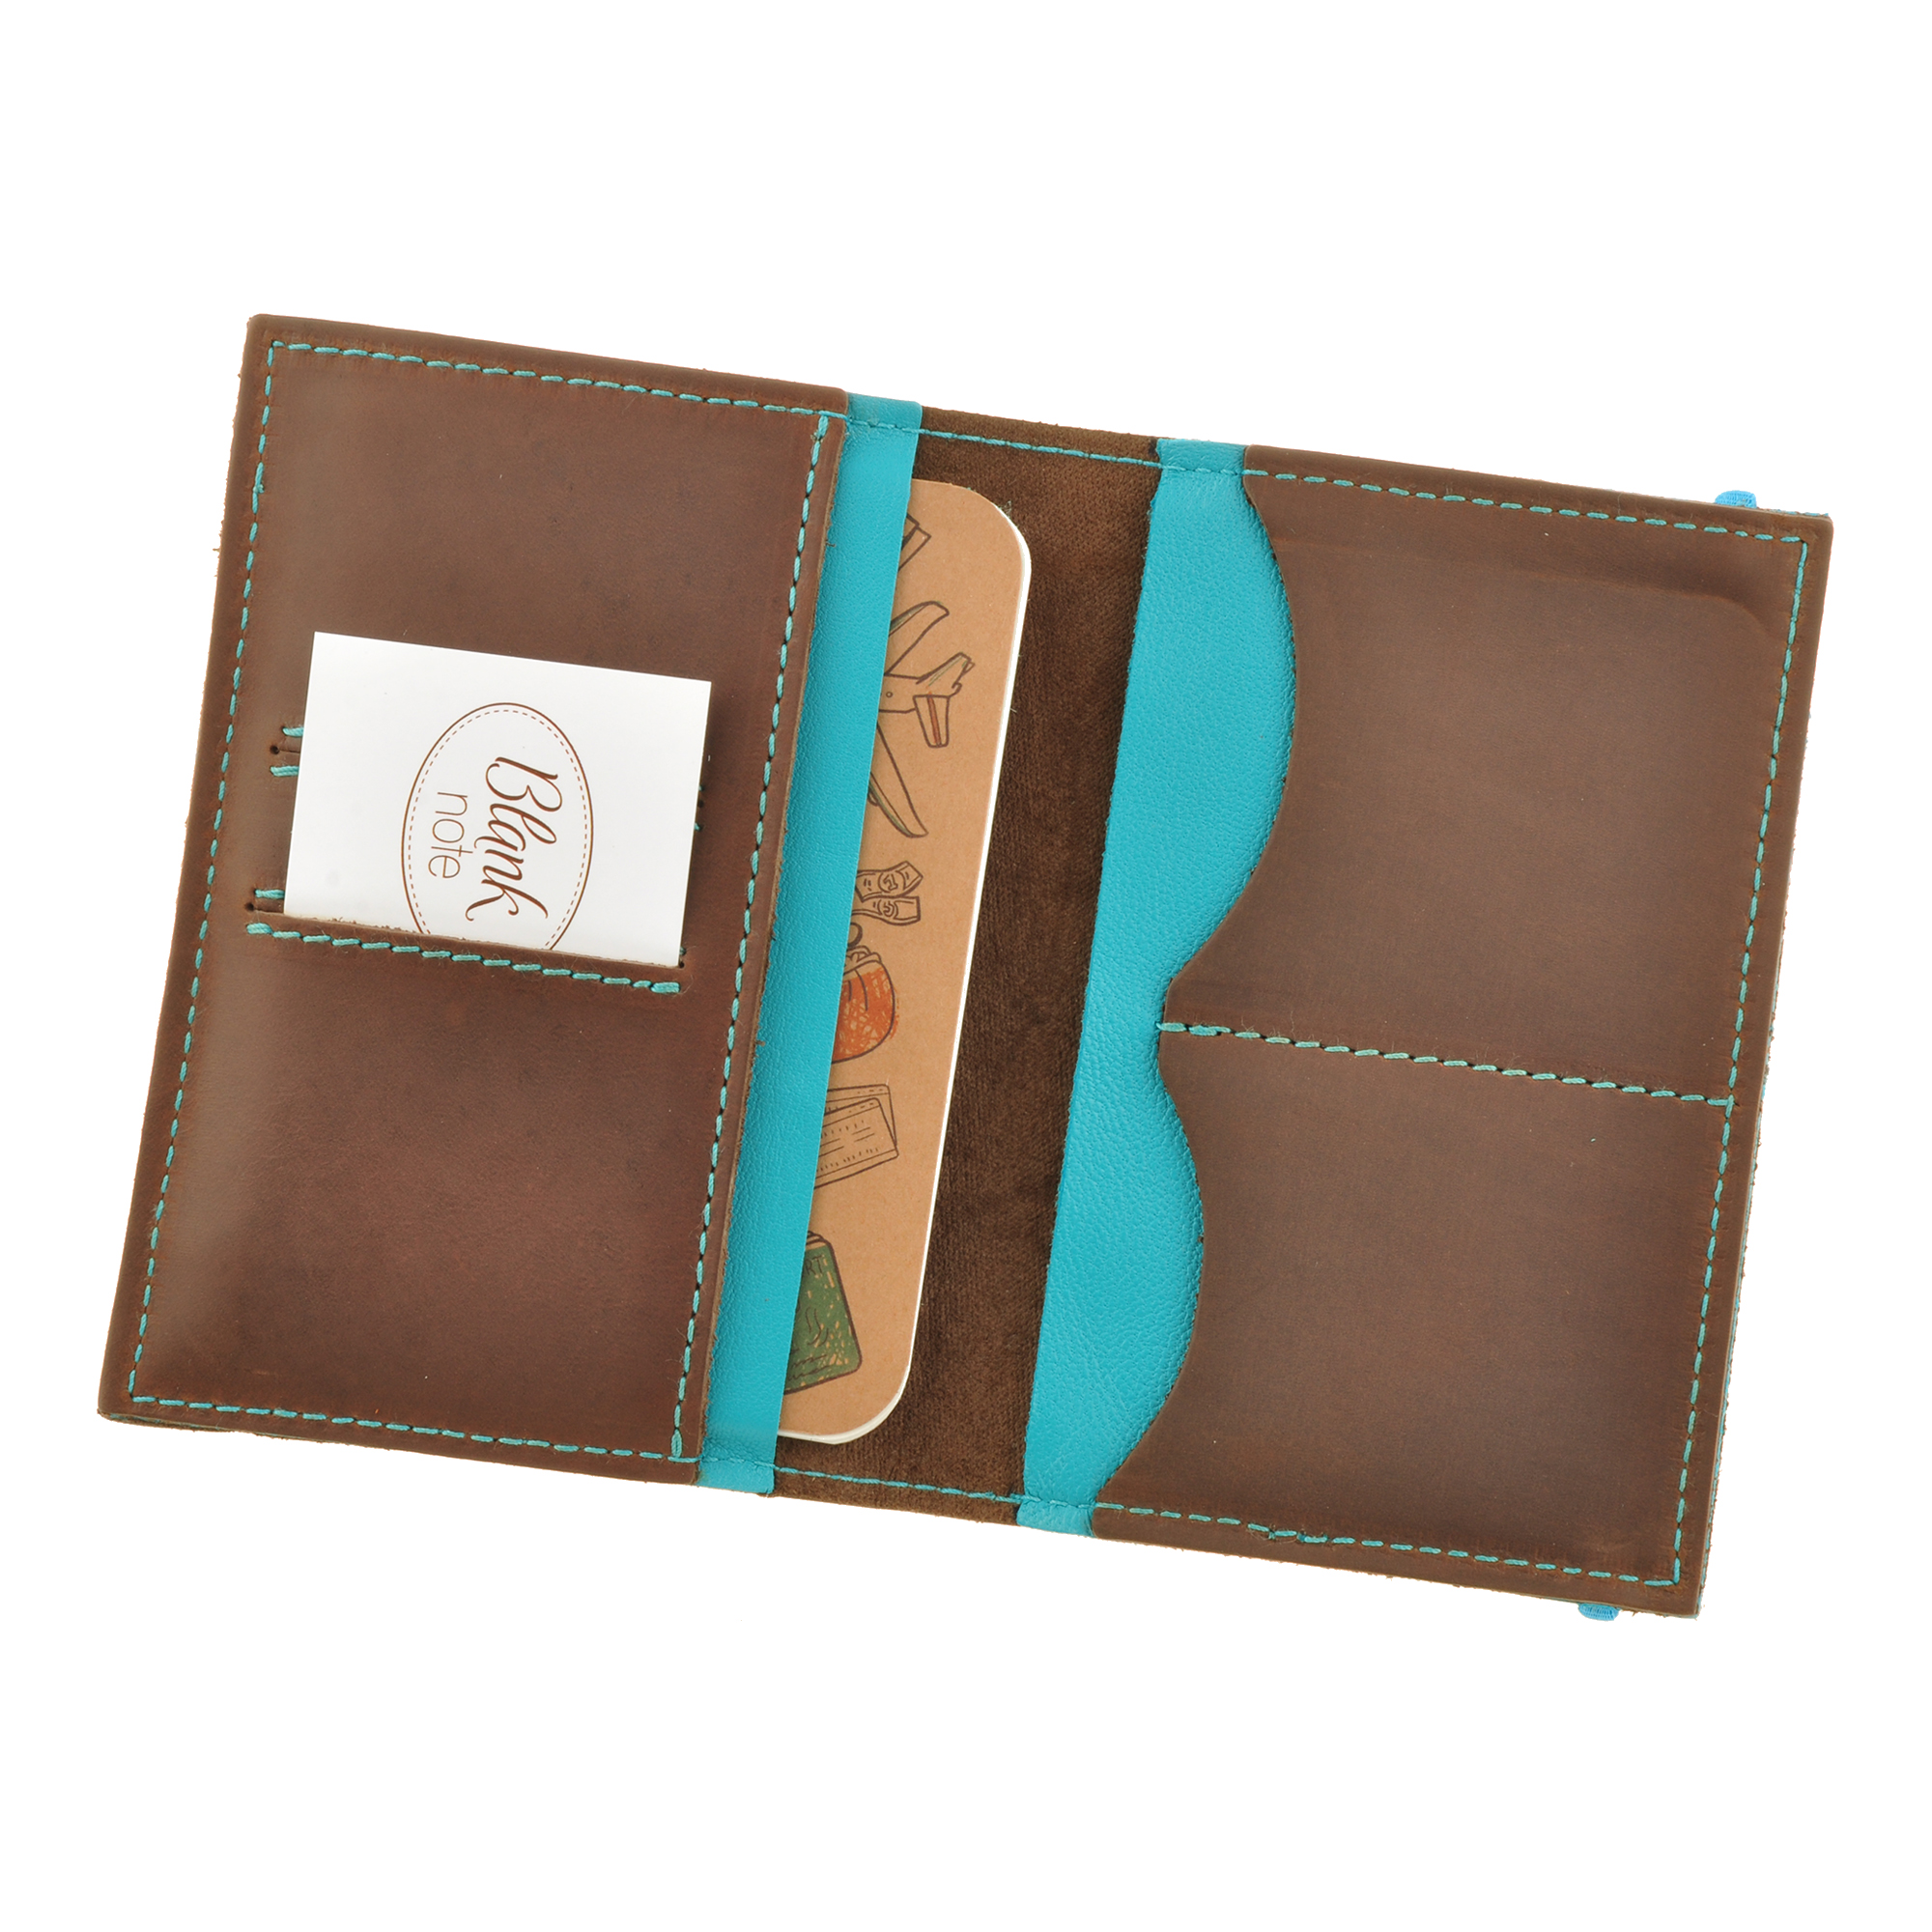 Фото 1Обложка для паспорта на резинке BlankNote 2.0 Орех-Тиффани натуральная кожа коричнево-голубая BN-OP-2-o-t